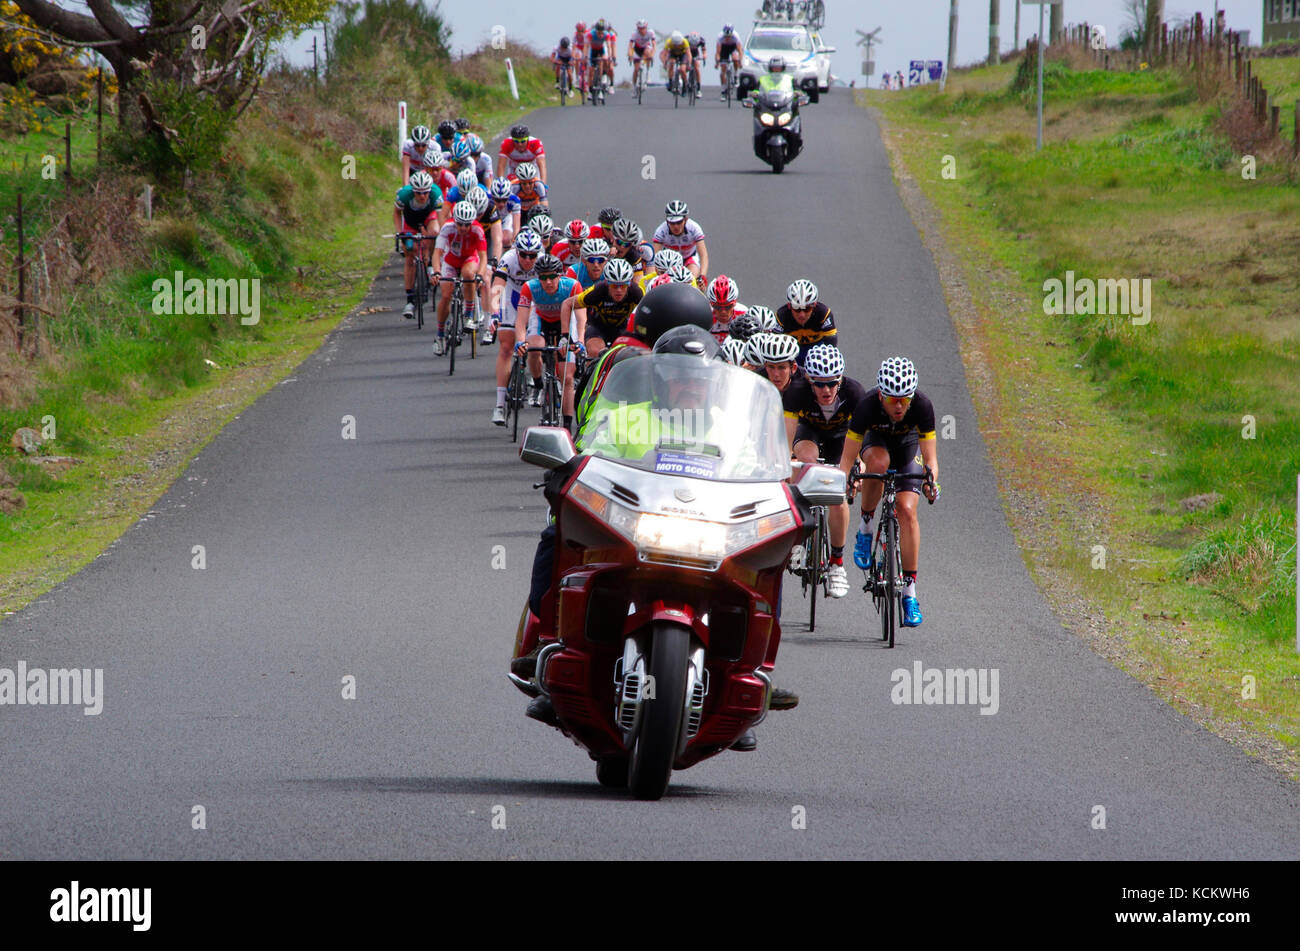 Visite de la course cycliste de Tasmanie, un événement annuel avec un itinéraire variable couvrant plus de 600 km sur six jours. Près de Highclere et Burnie, Tasmanie, Australie Banque D'Images